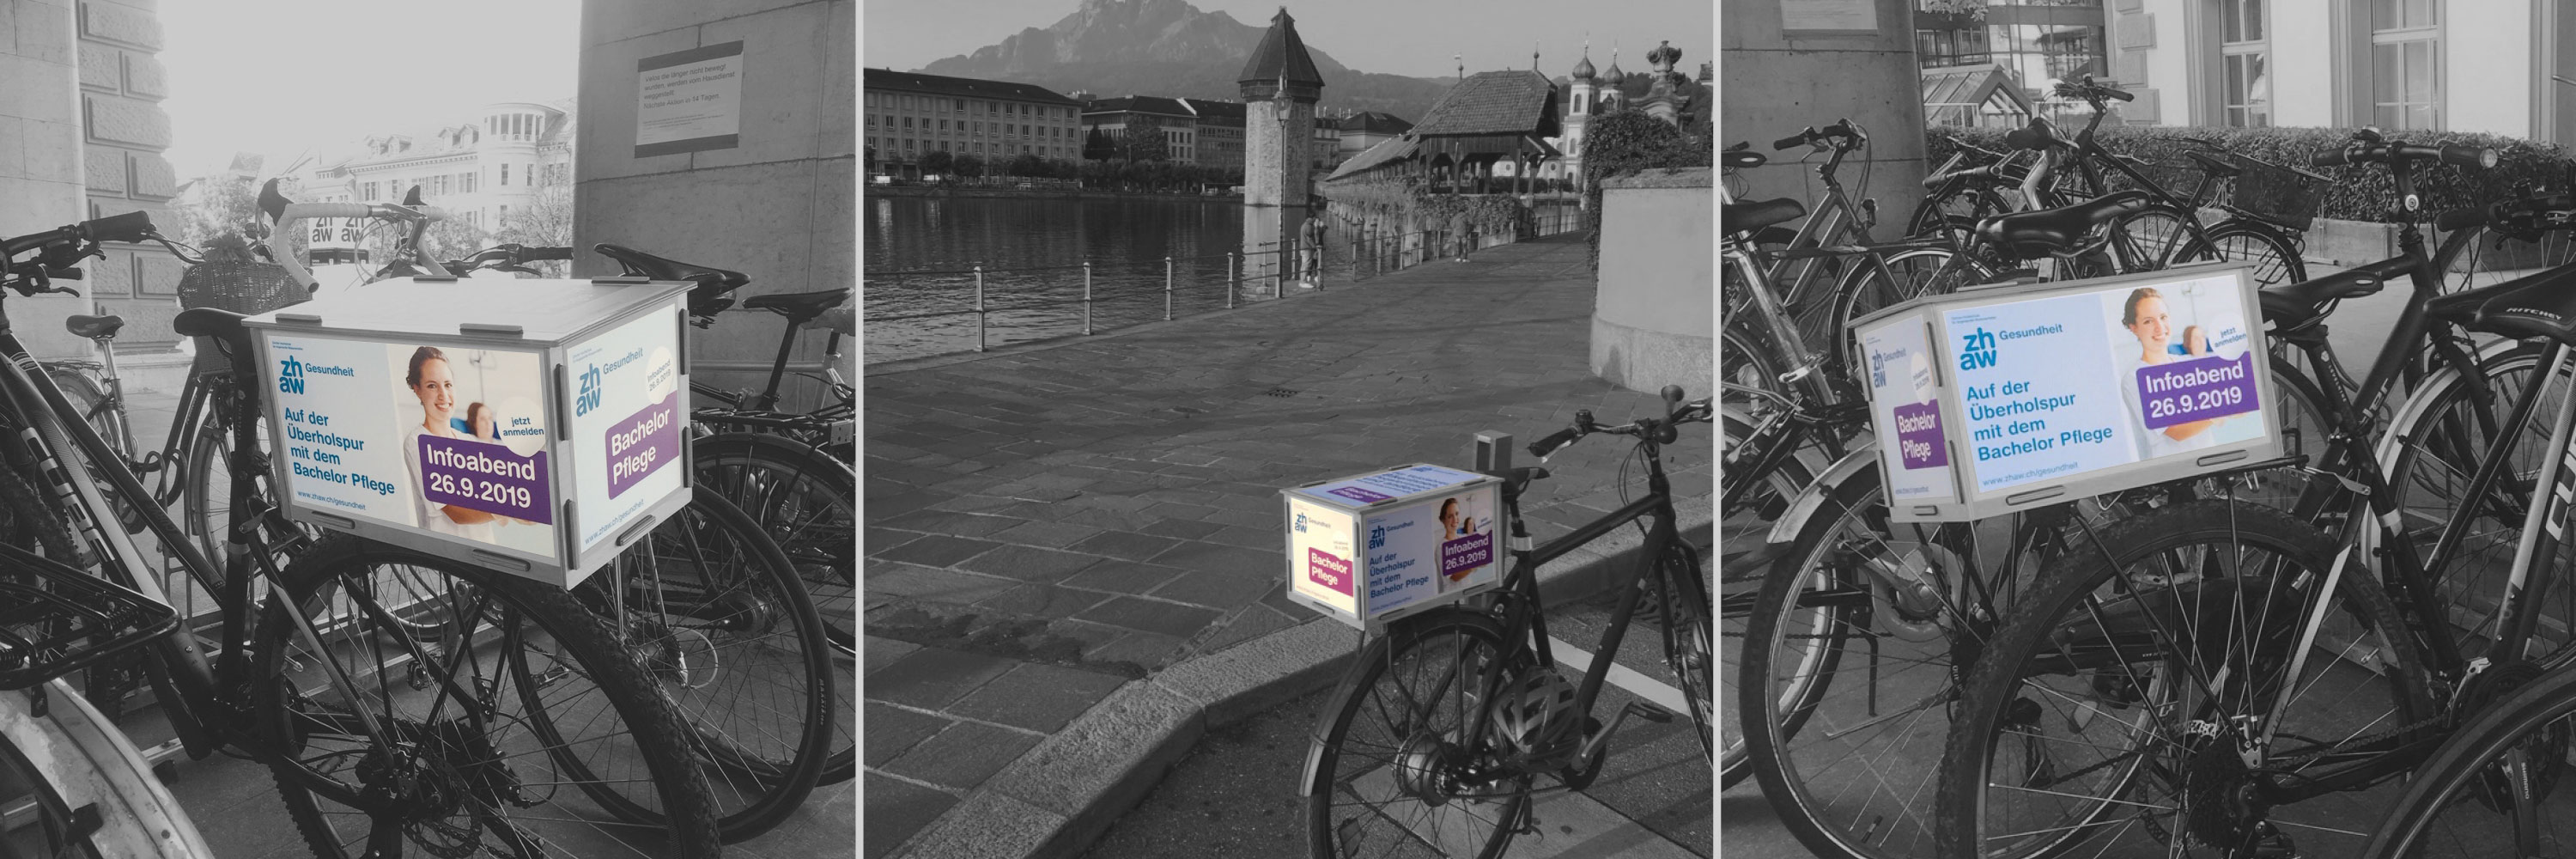 Werbebox für die ZHAW Gesundheit, montiert auf Gepäckträgern von Velos